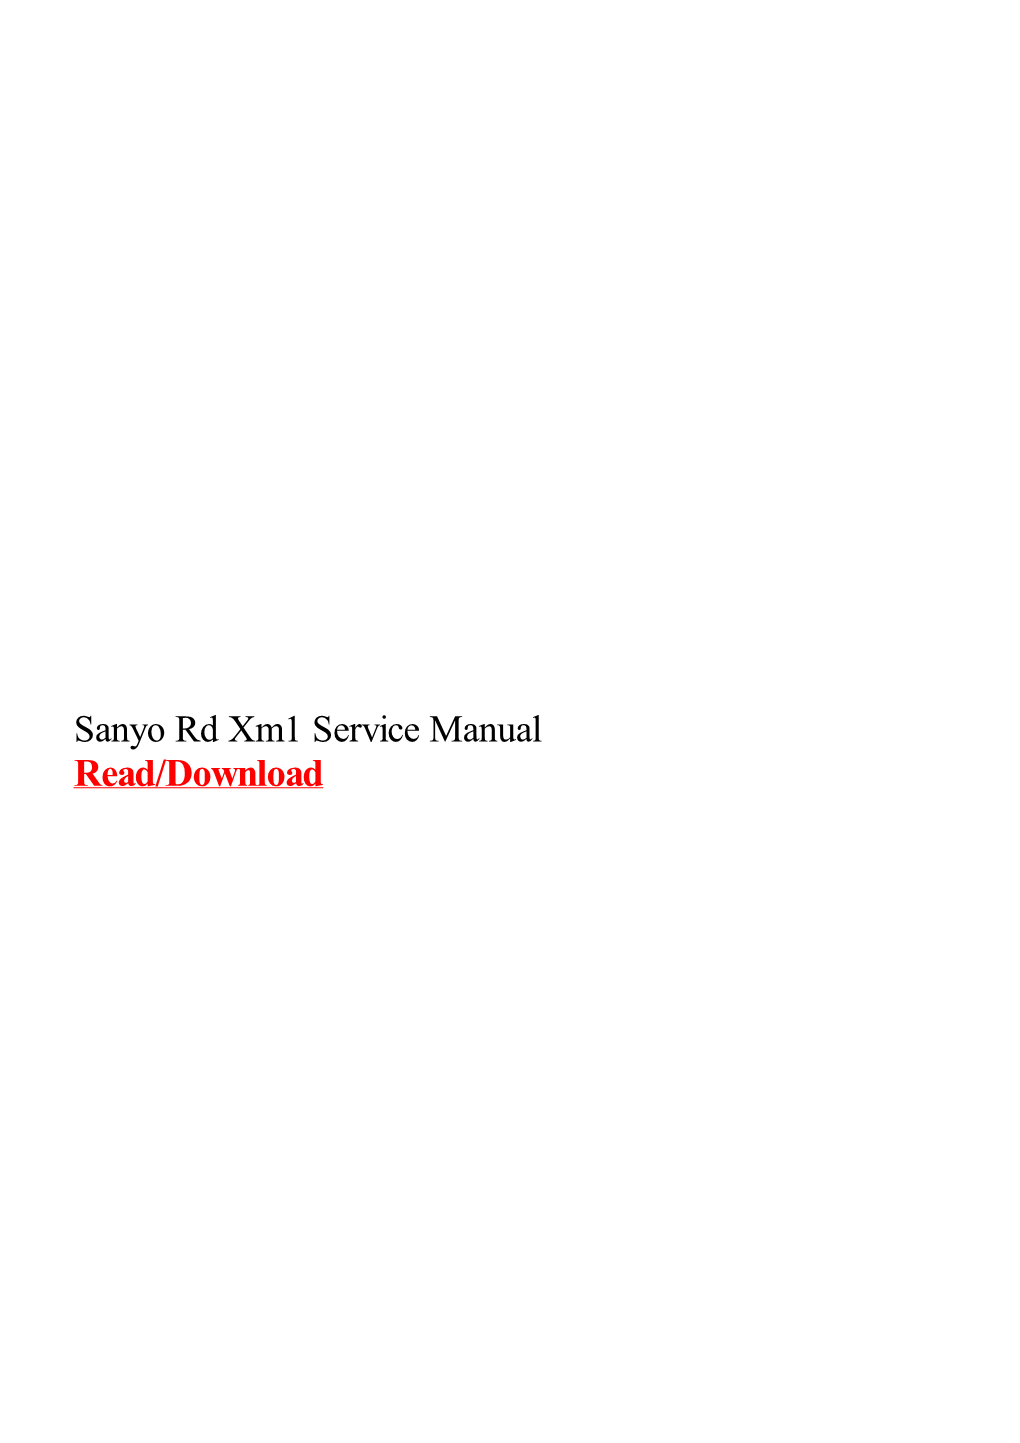 Sanyo Rd Xm1 Service Manual.Pdf